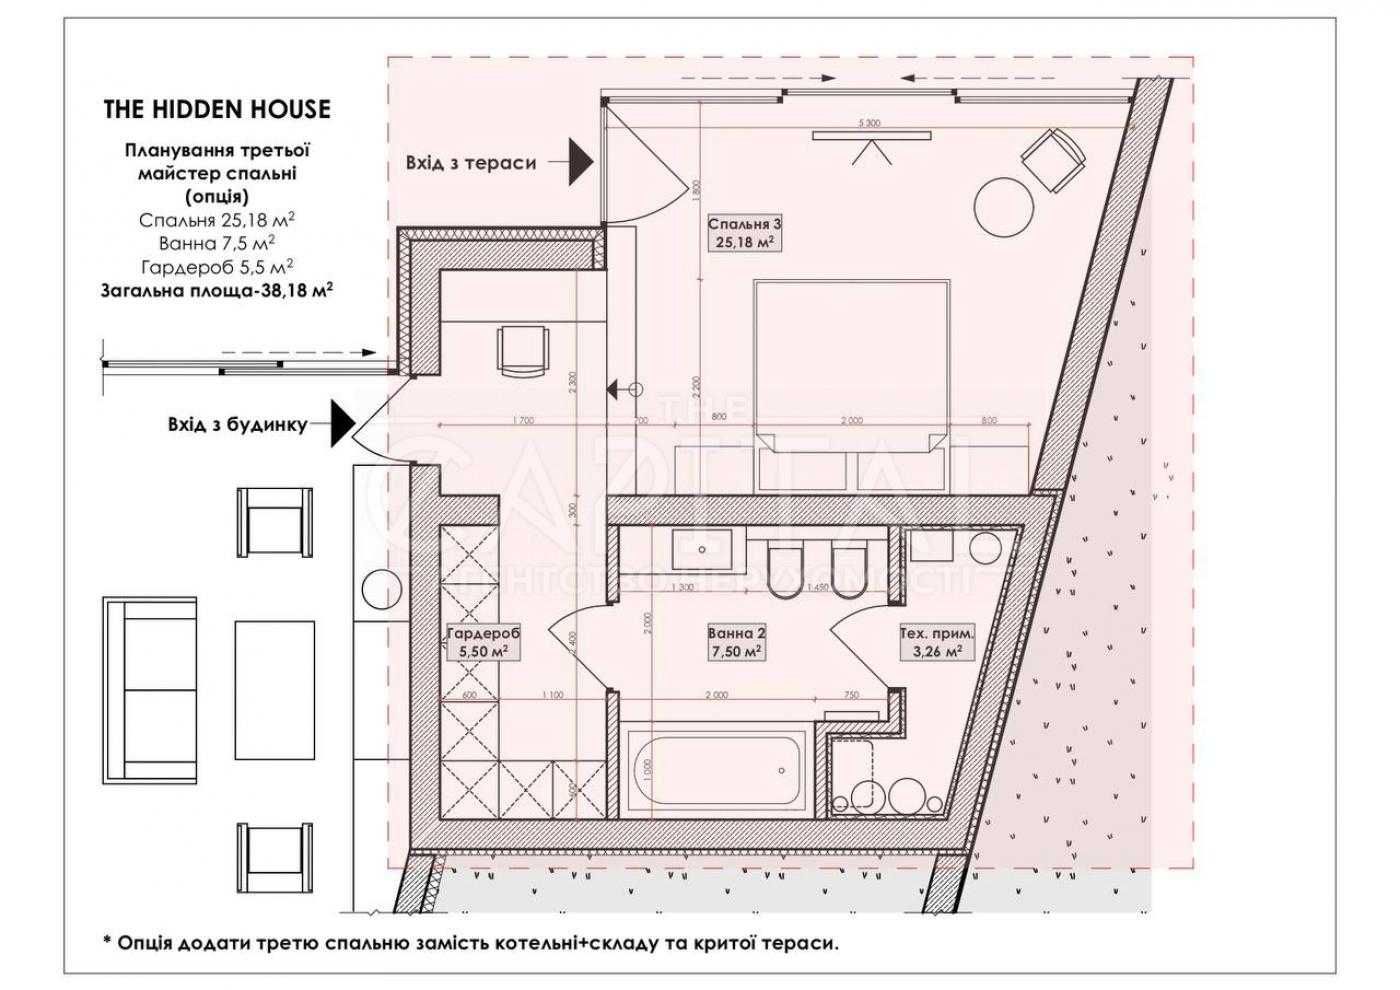 Продаж унікального 3к будинку  Hidden House 150м2 в КМ Swisstown